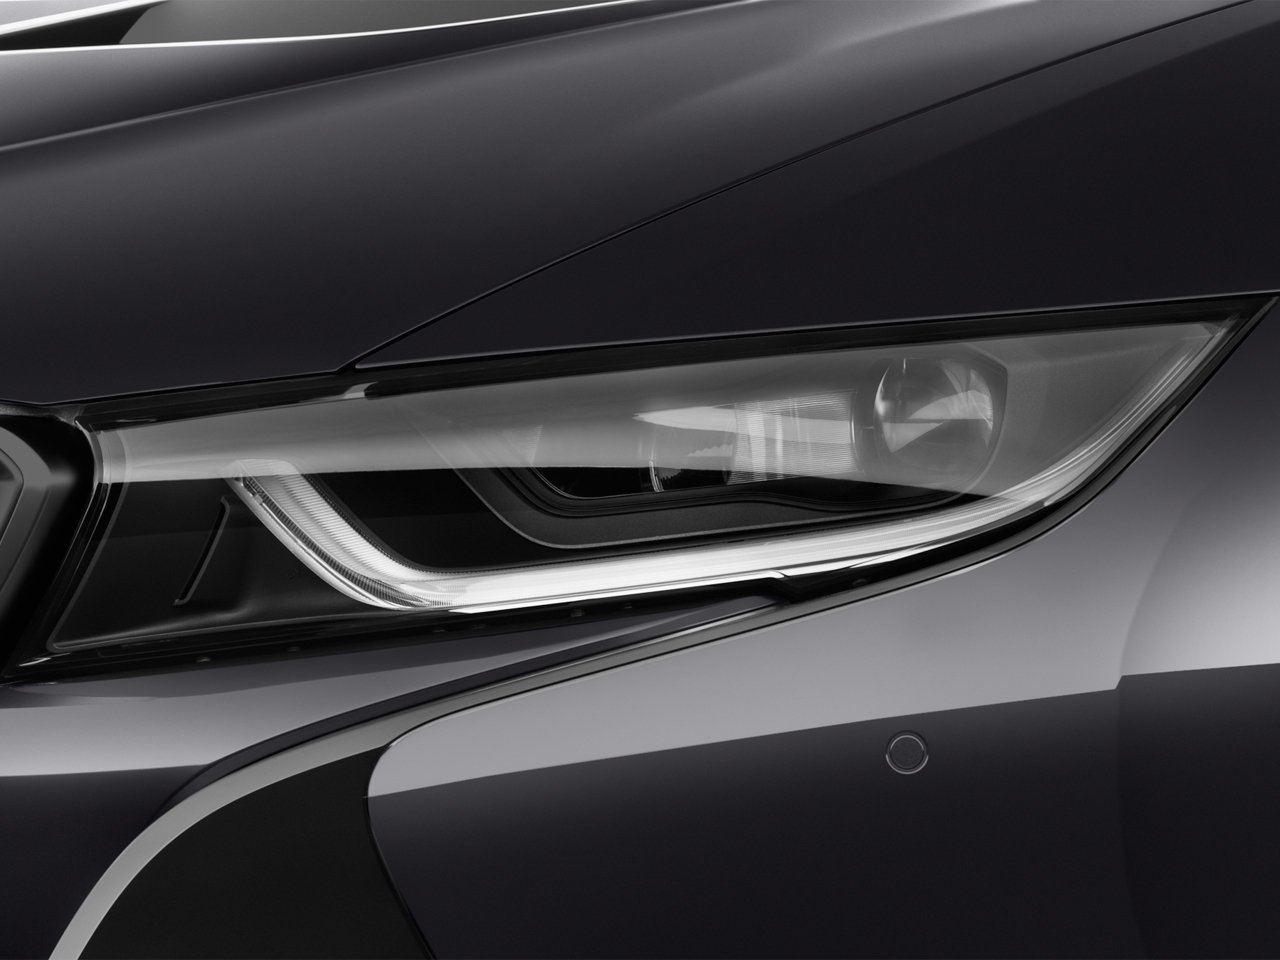 BMW i8 exterior - Headlight